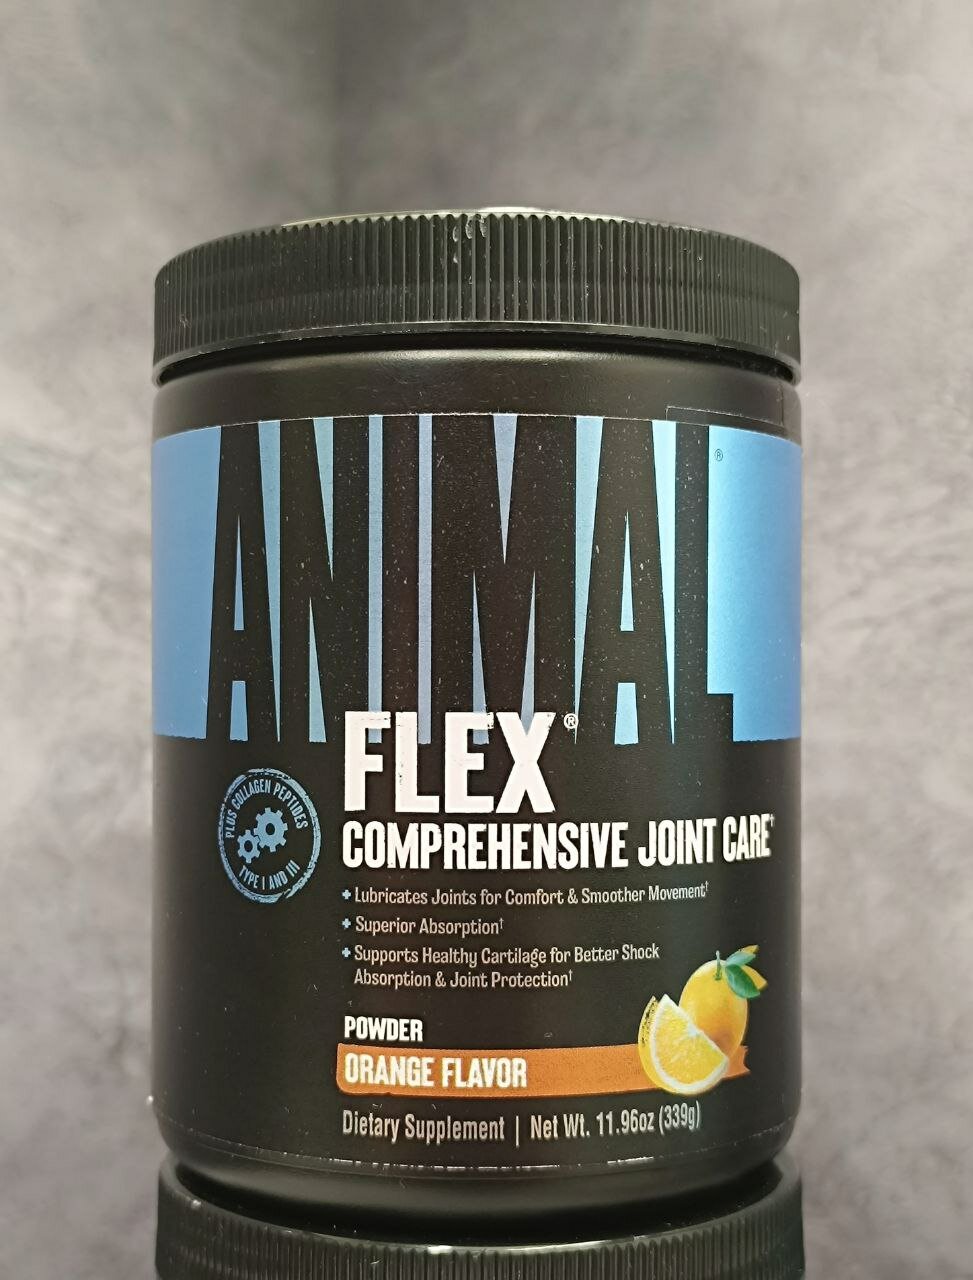 Препарат для укрепления связок и суставов Universal Nutrition Animal Flex Powder, 339 гр.